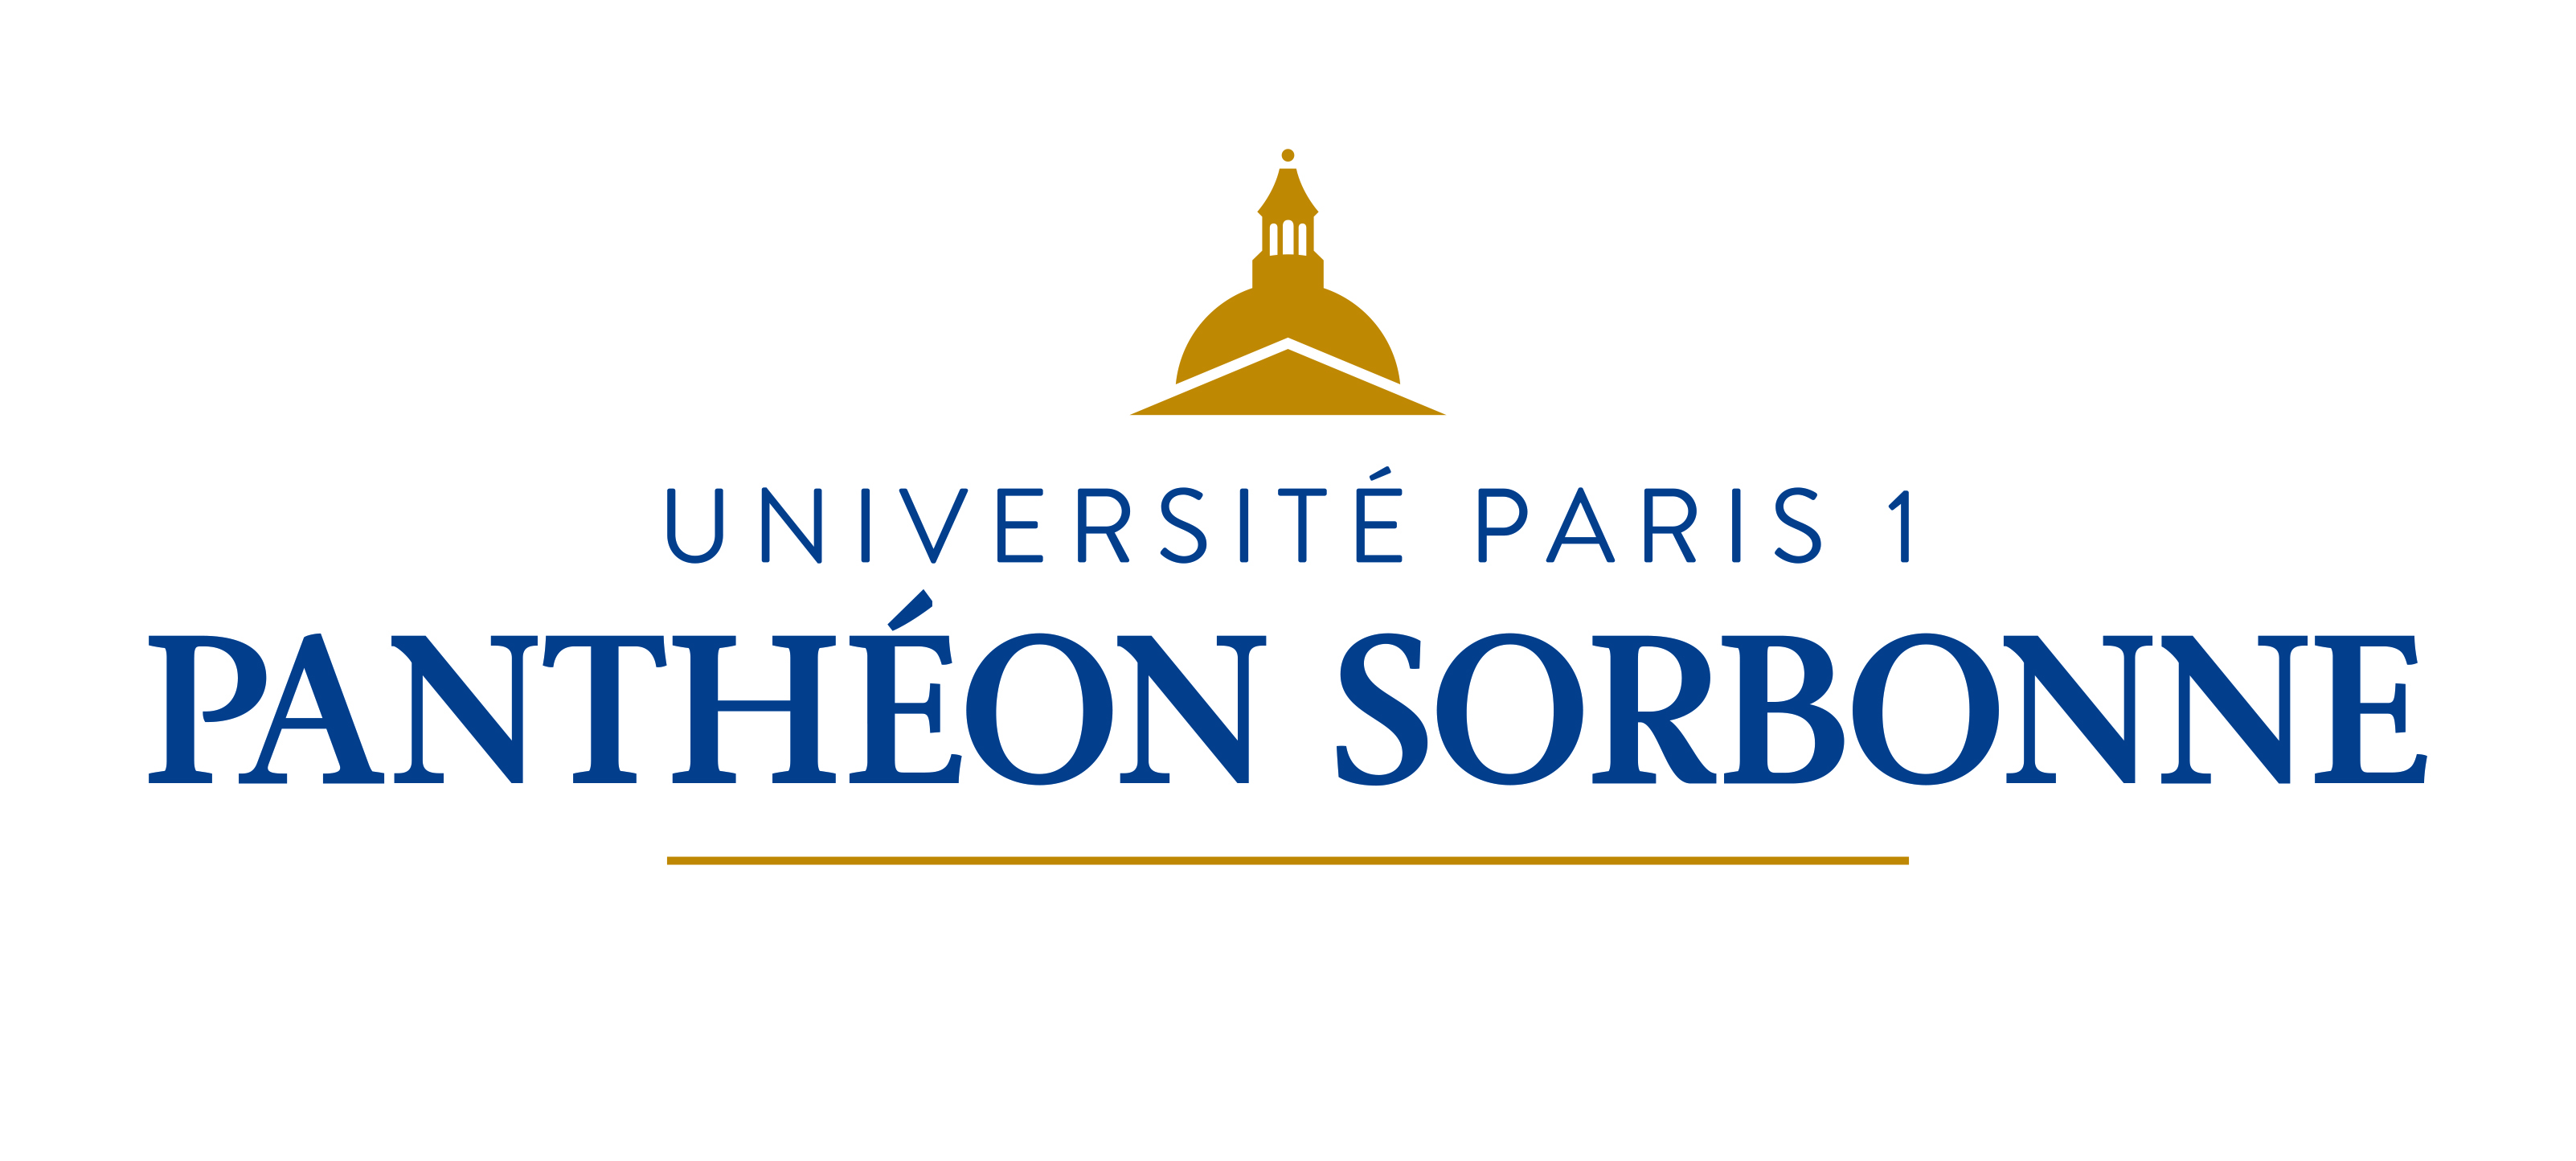 University of Paris 1 Panthéon-Sorbonne